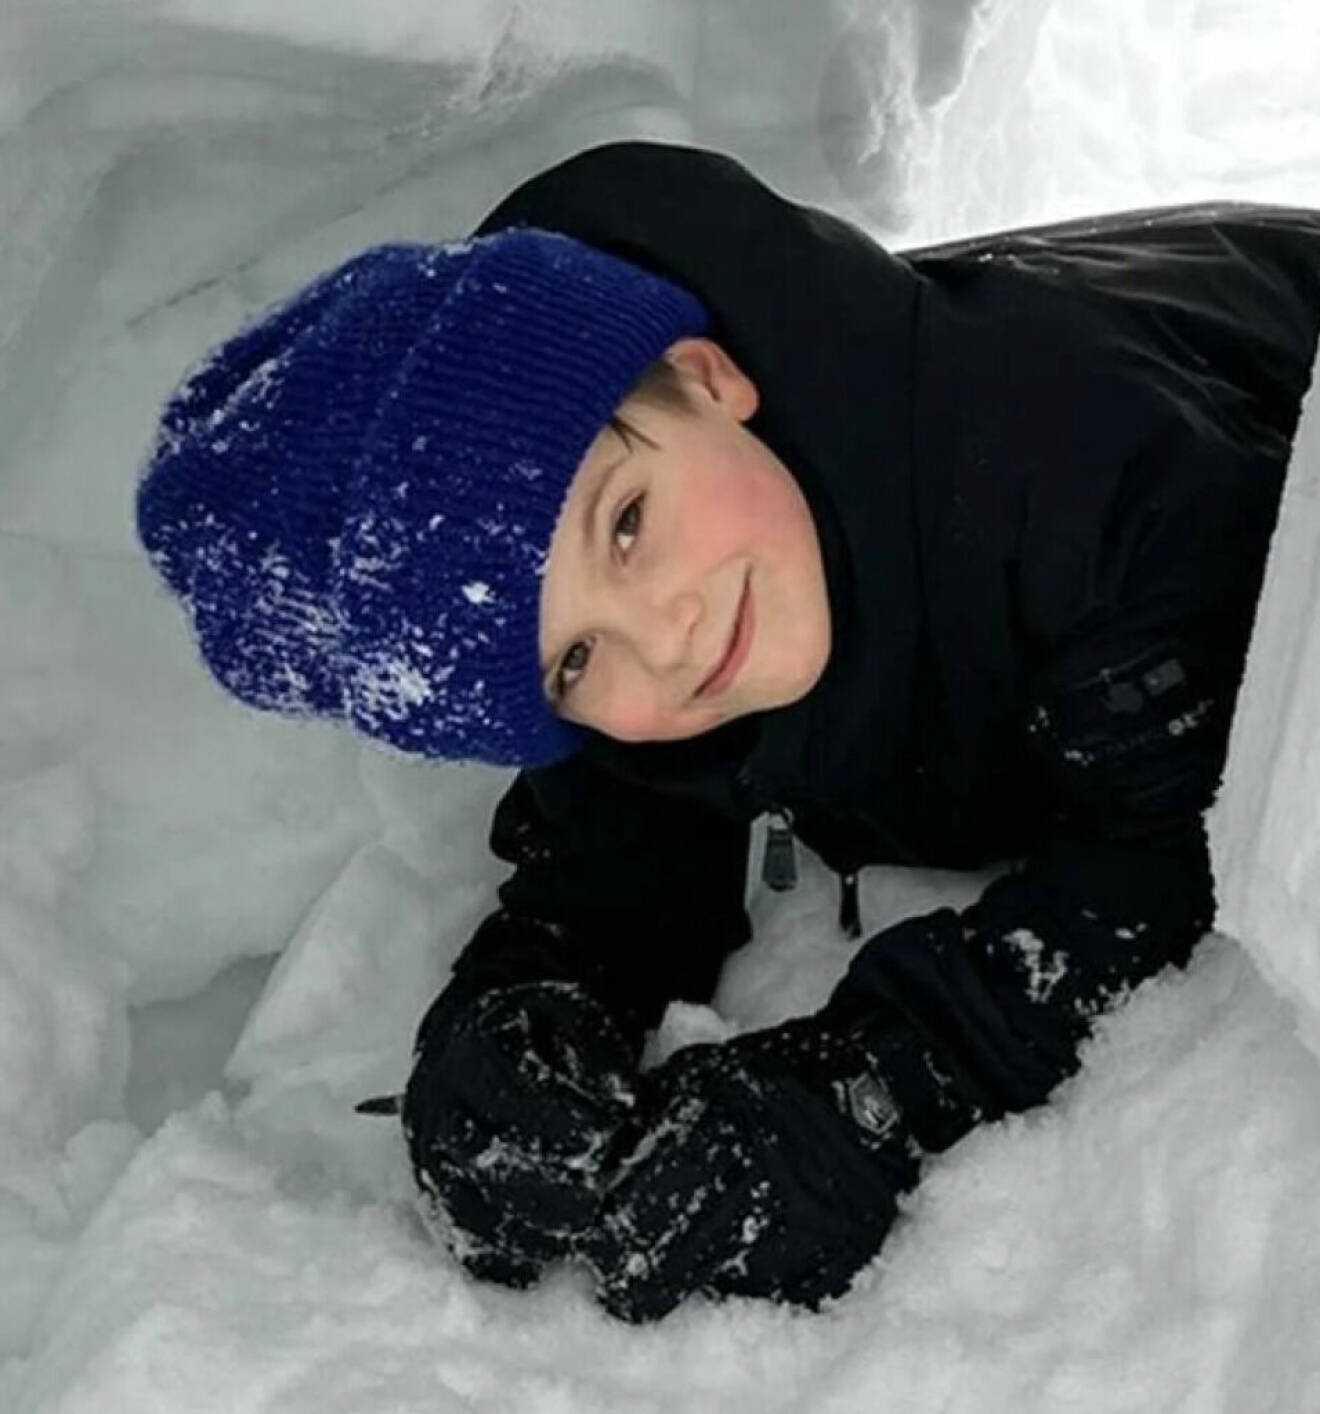 En liten åttaåring mitt under snöbygge!